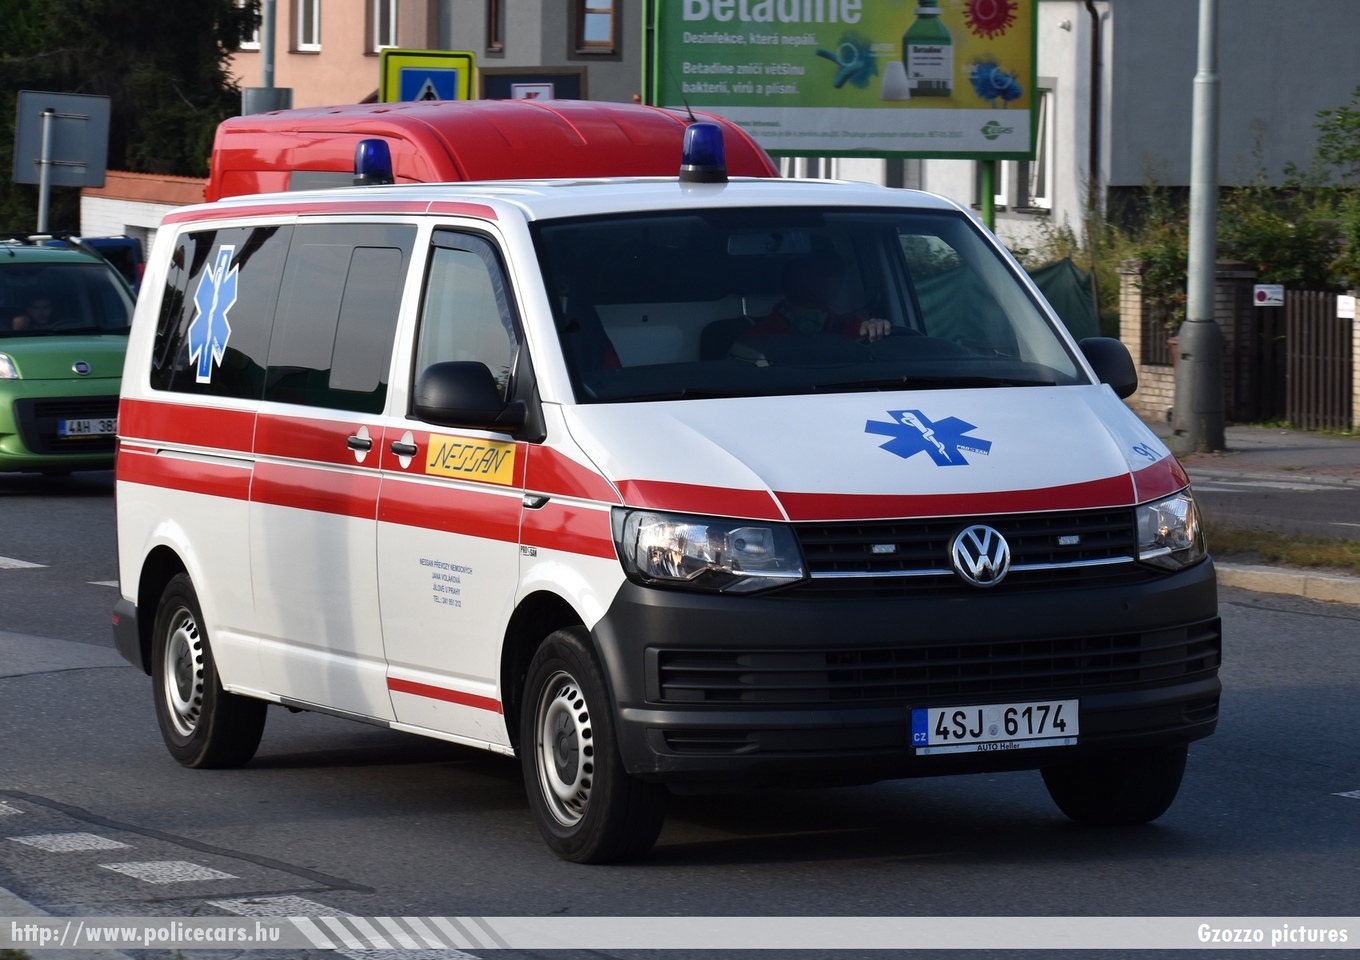 Volkswagen Transporter T6, fotó: Gzozzo pictures
Keywords: cseh Csehország czech ambulance mentő mentőautó